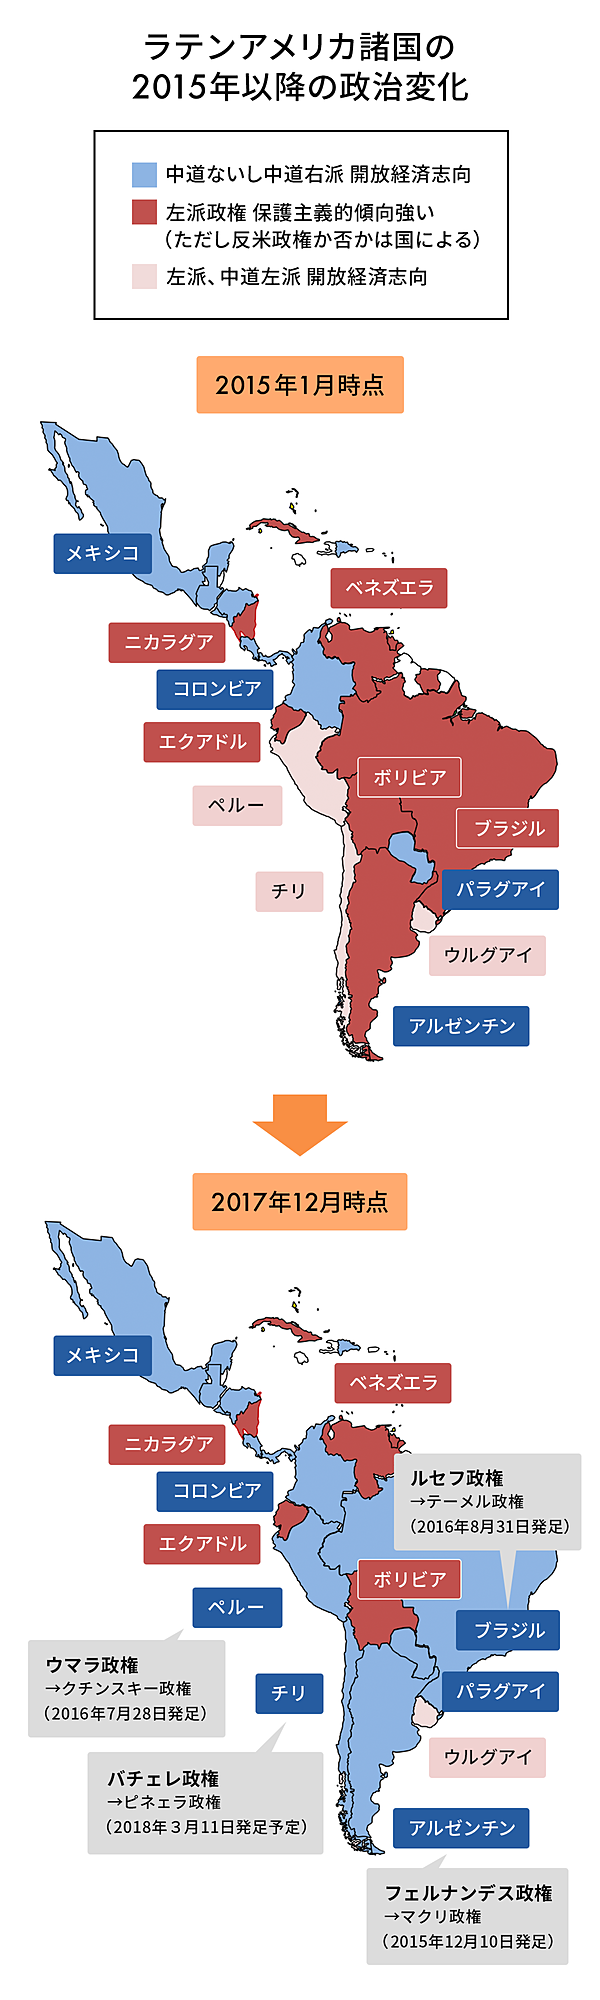 竹下幸治郎 自由貿易拡大する中南米 相次ぐ大統領選にも注目